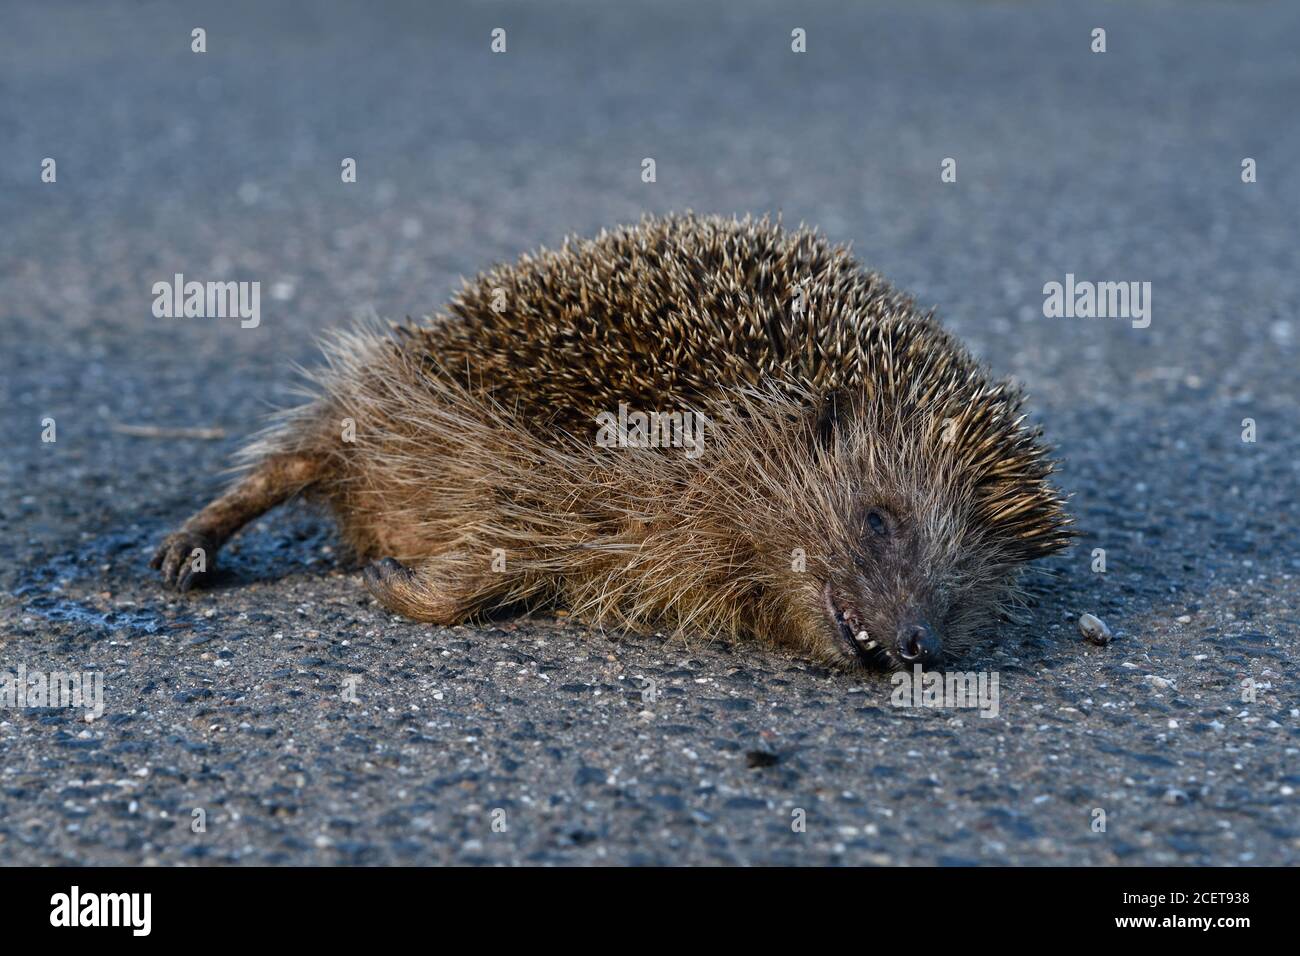 Hedgehog ( Erinaceus europaeus ), morto , vittima di traffico, schiacciato sulla strada, uccisione di strada, in pericolo, percorso dal traffico stradale, colpito da un'automobile, fauna selvatica, Foto Stock